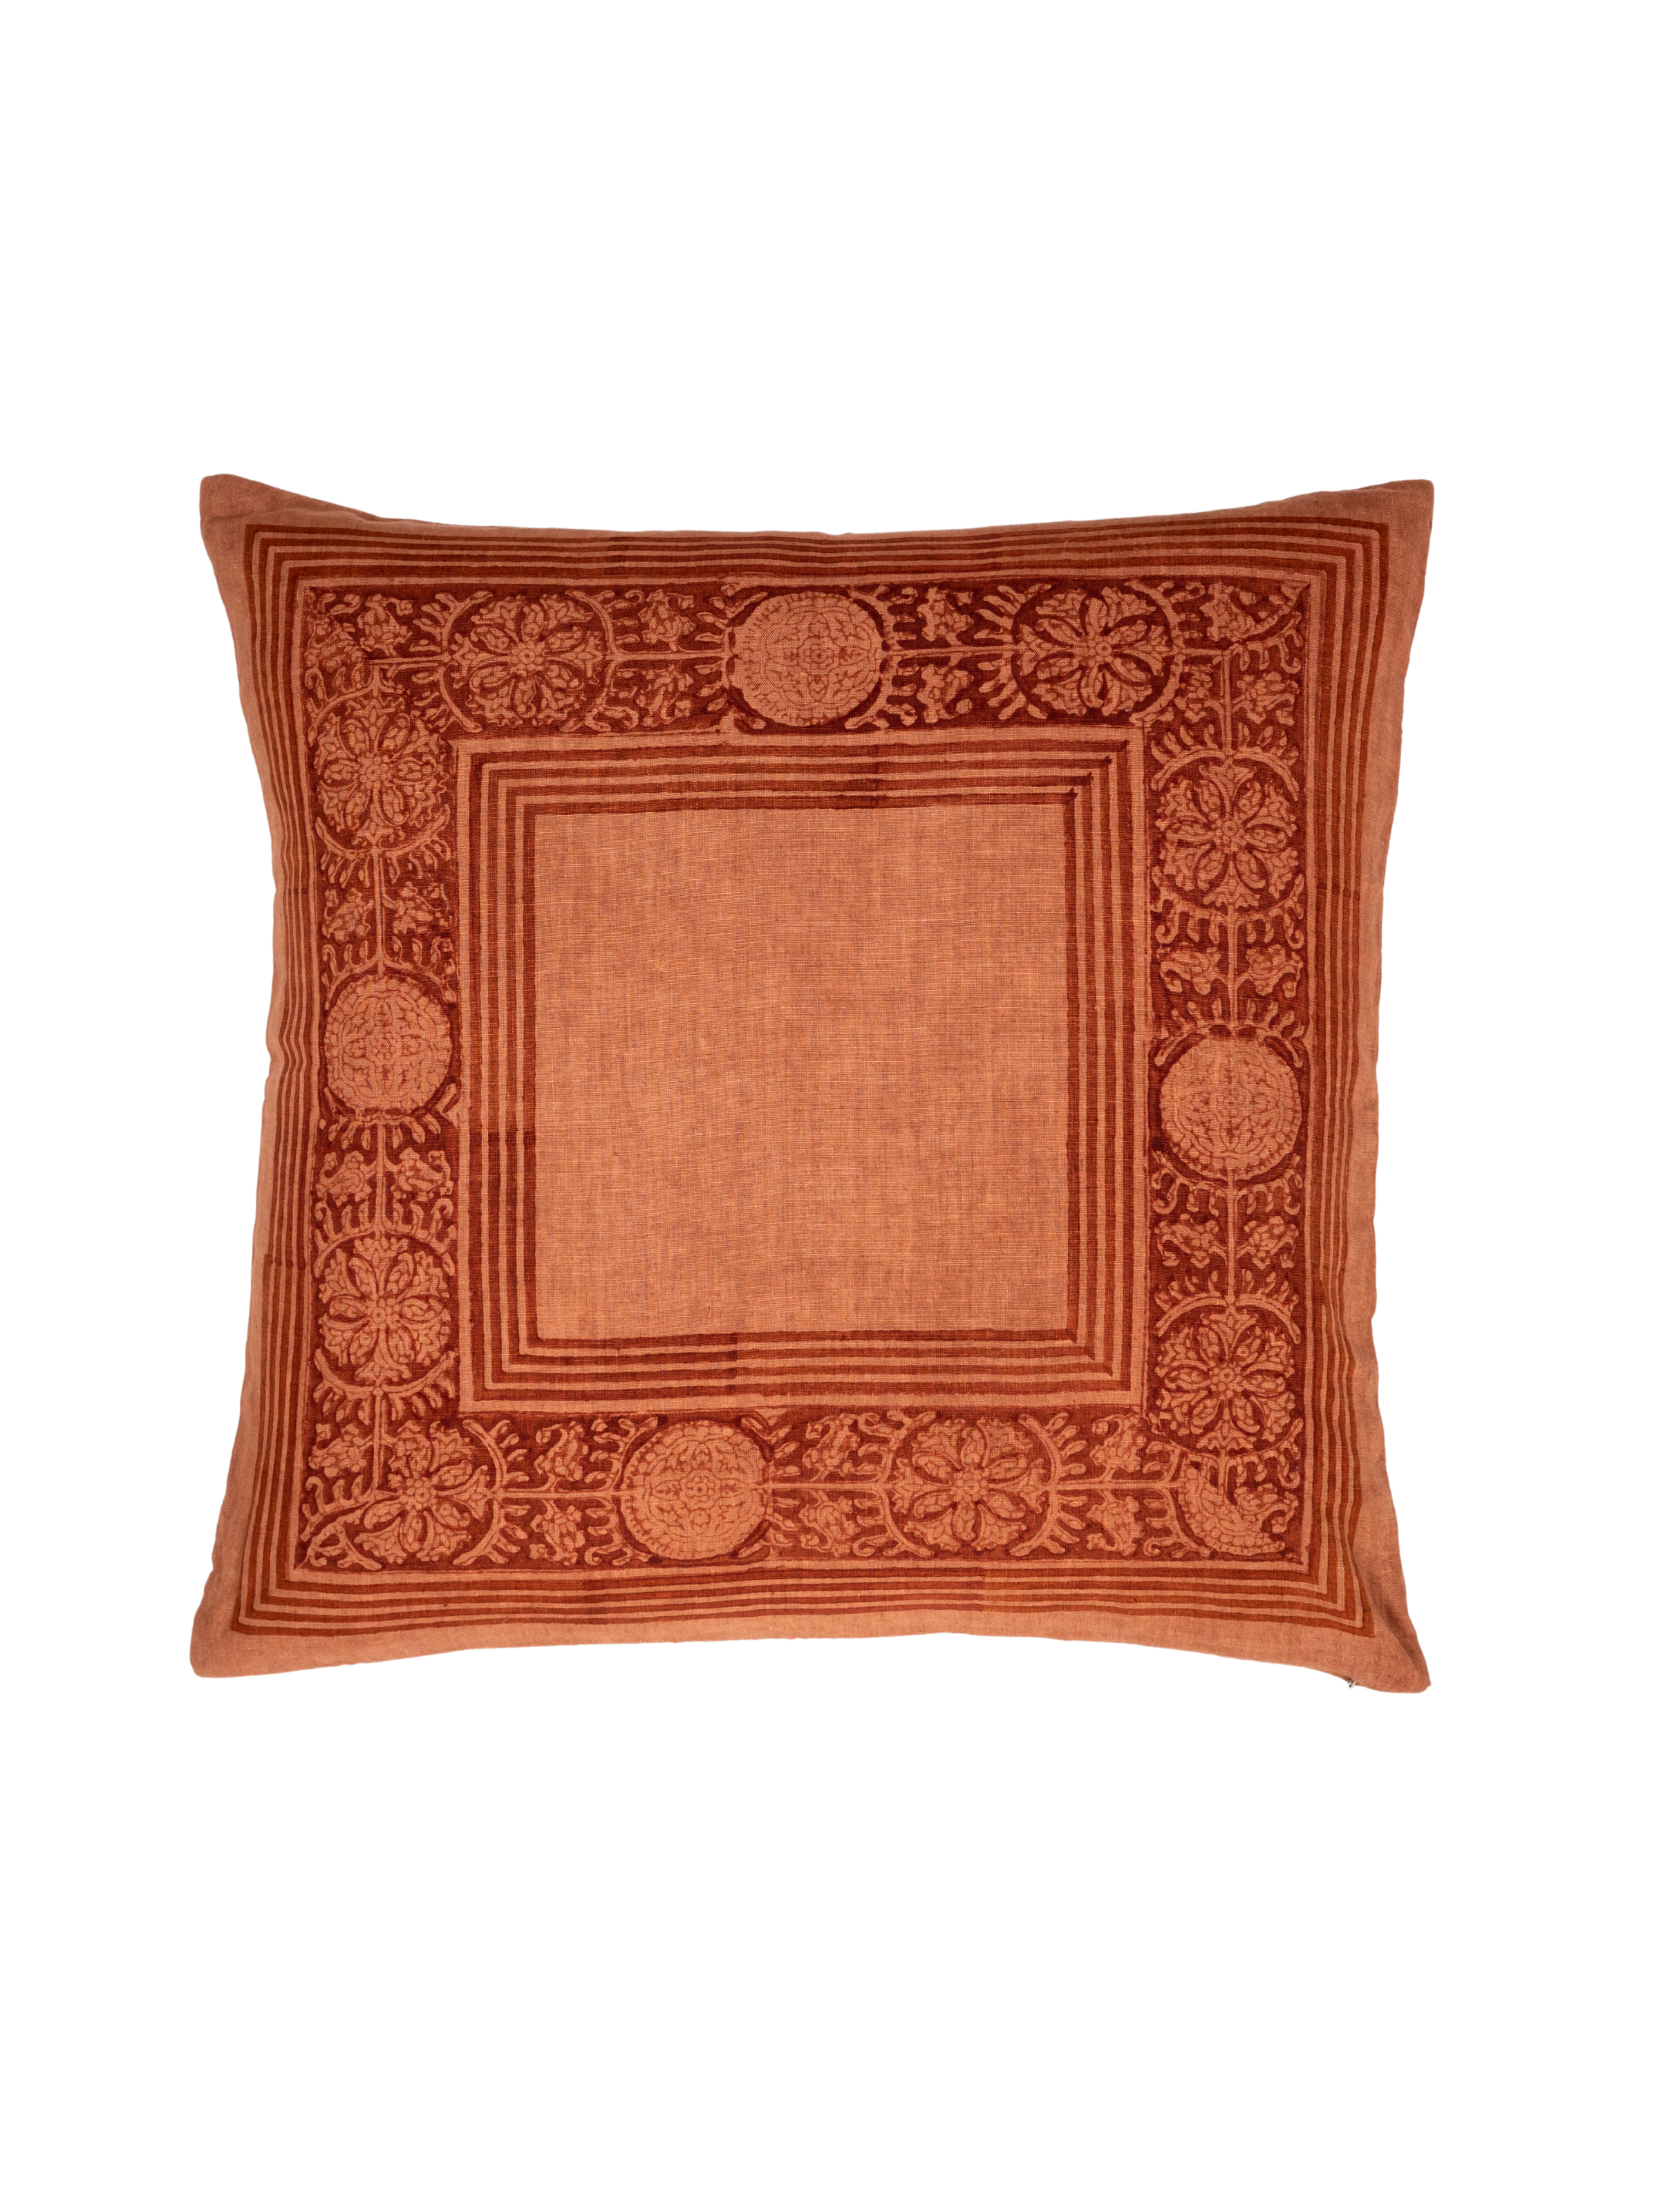 Suzani Border Decorative Pillow Cover